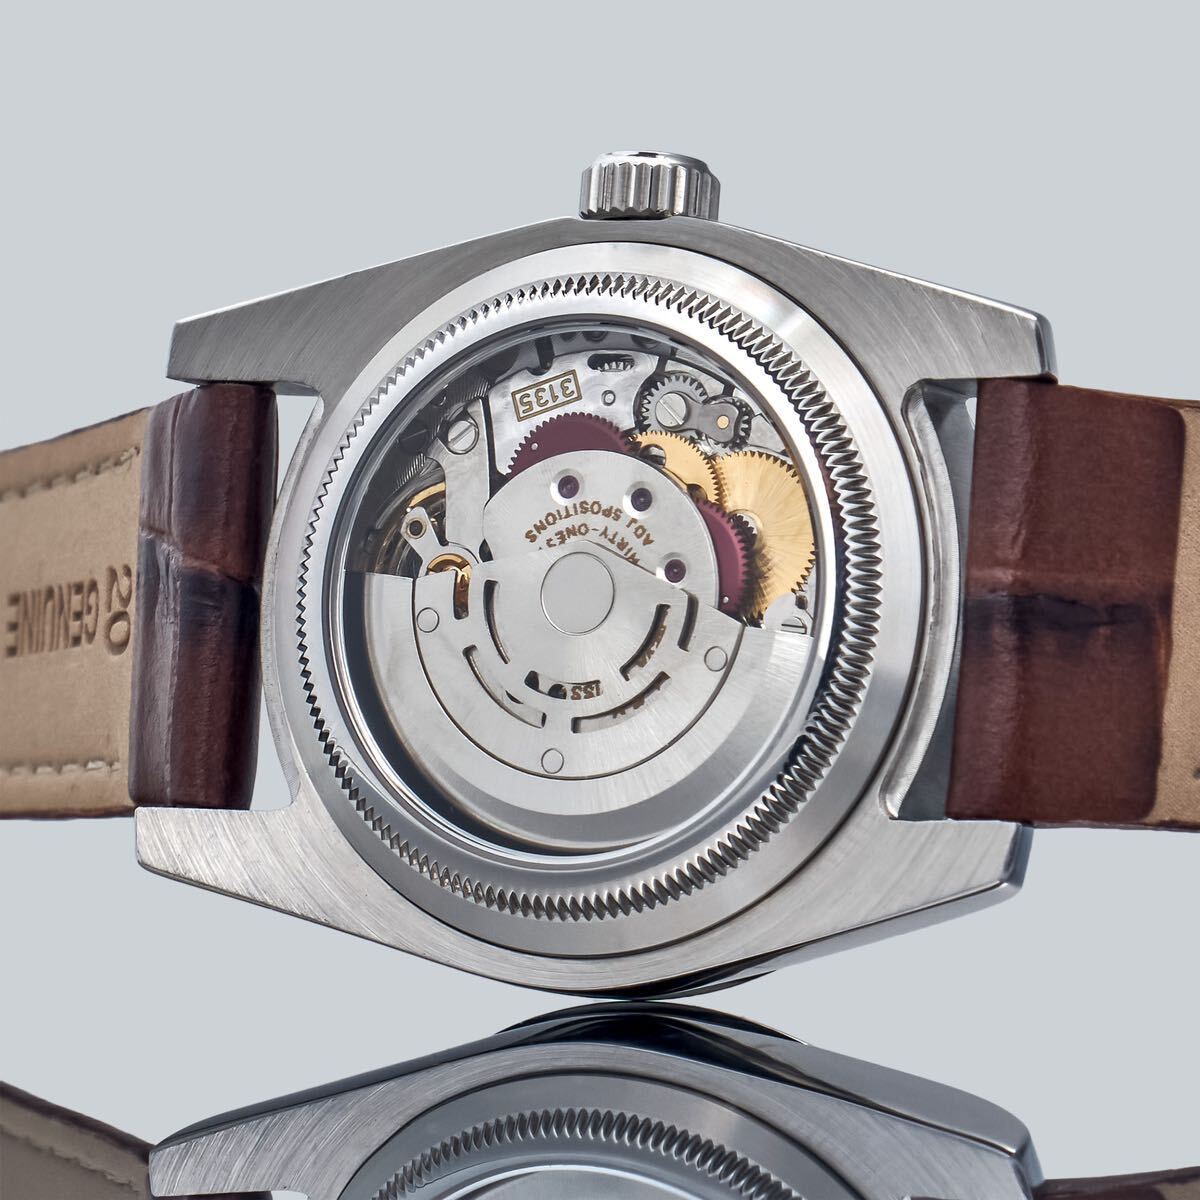 Marriage Watch Rolex 36mm Unisex Wristwatch With Pocket Watch Design Skeleton